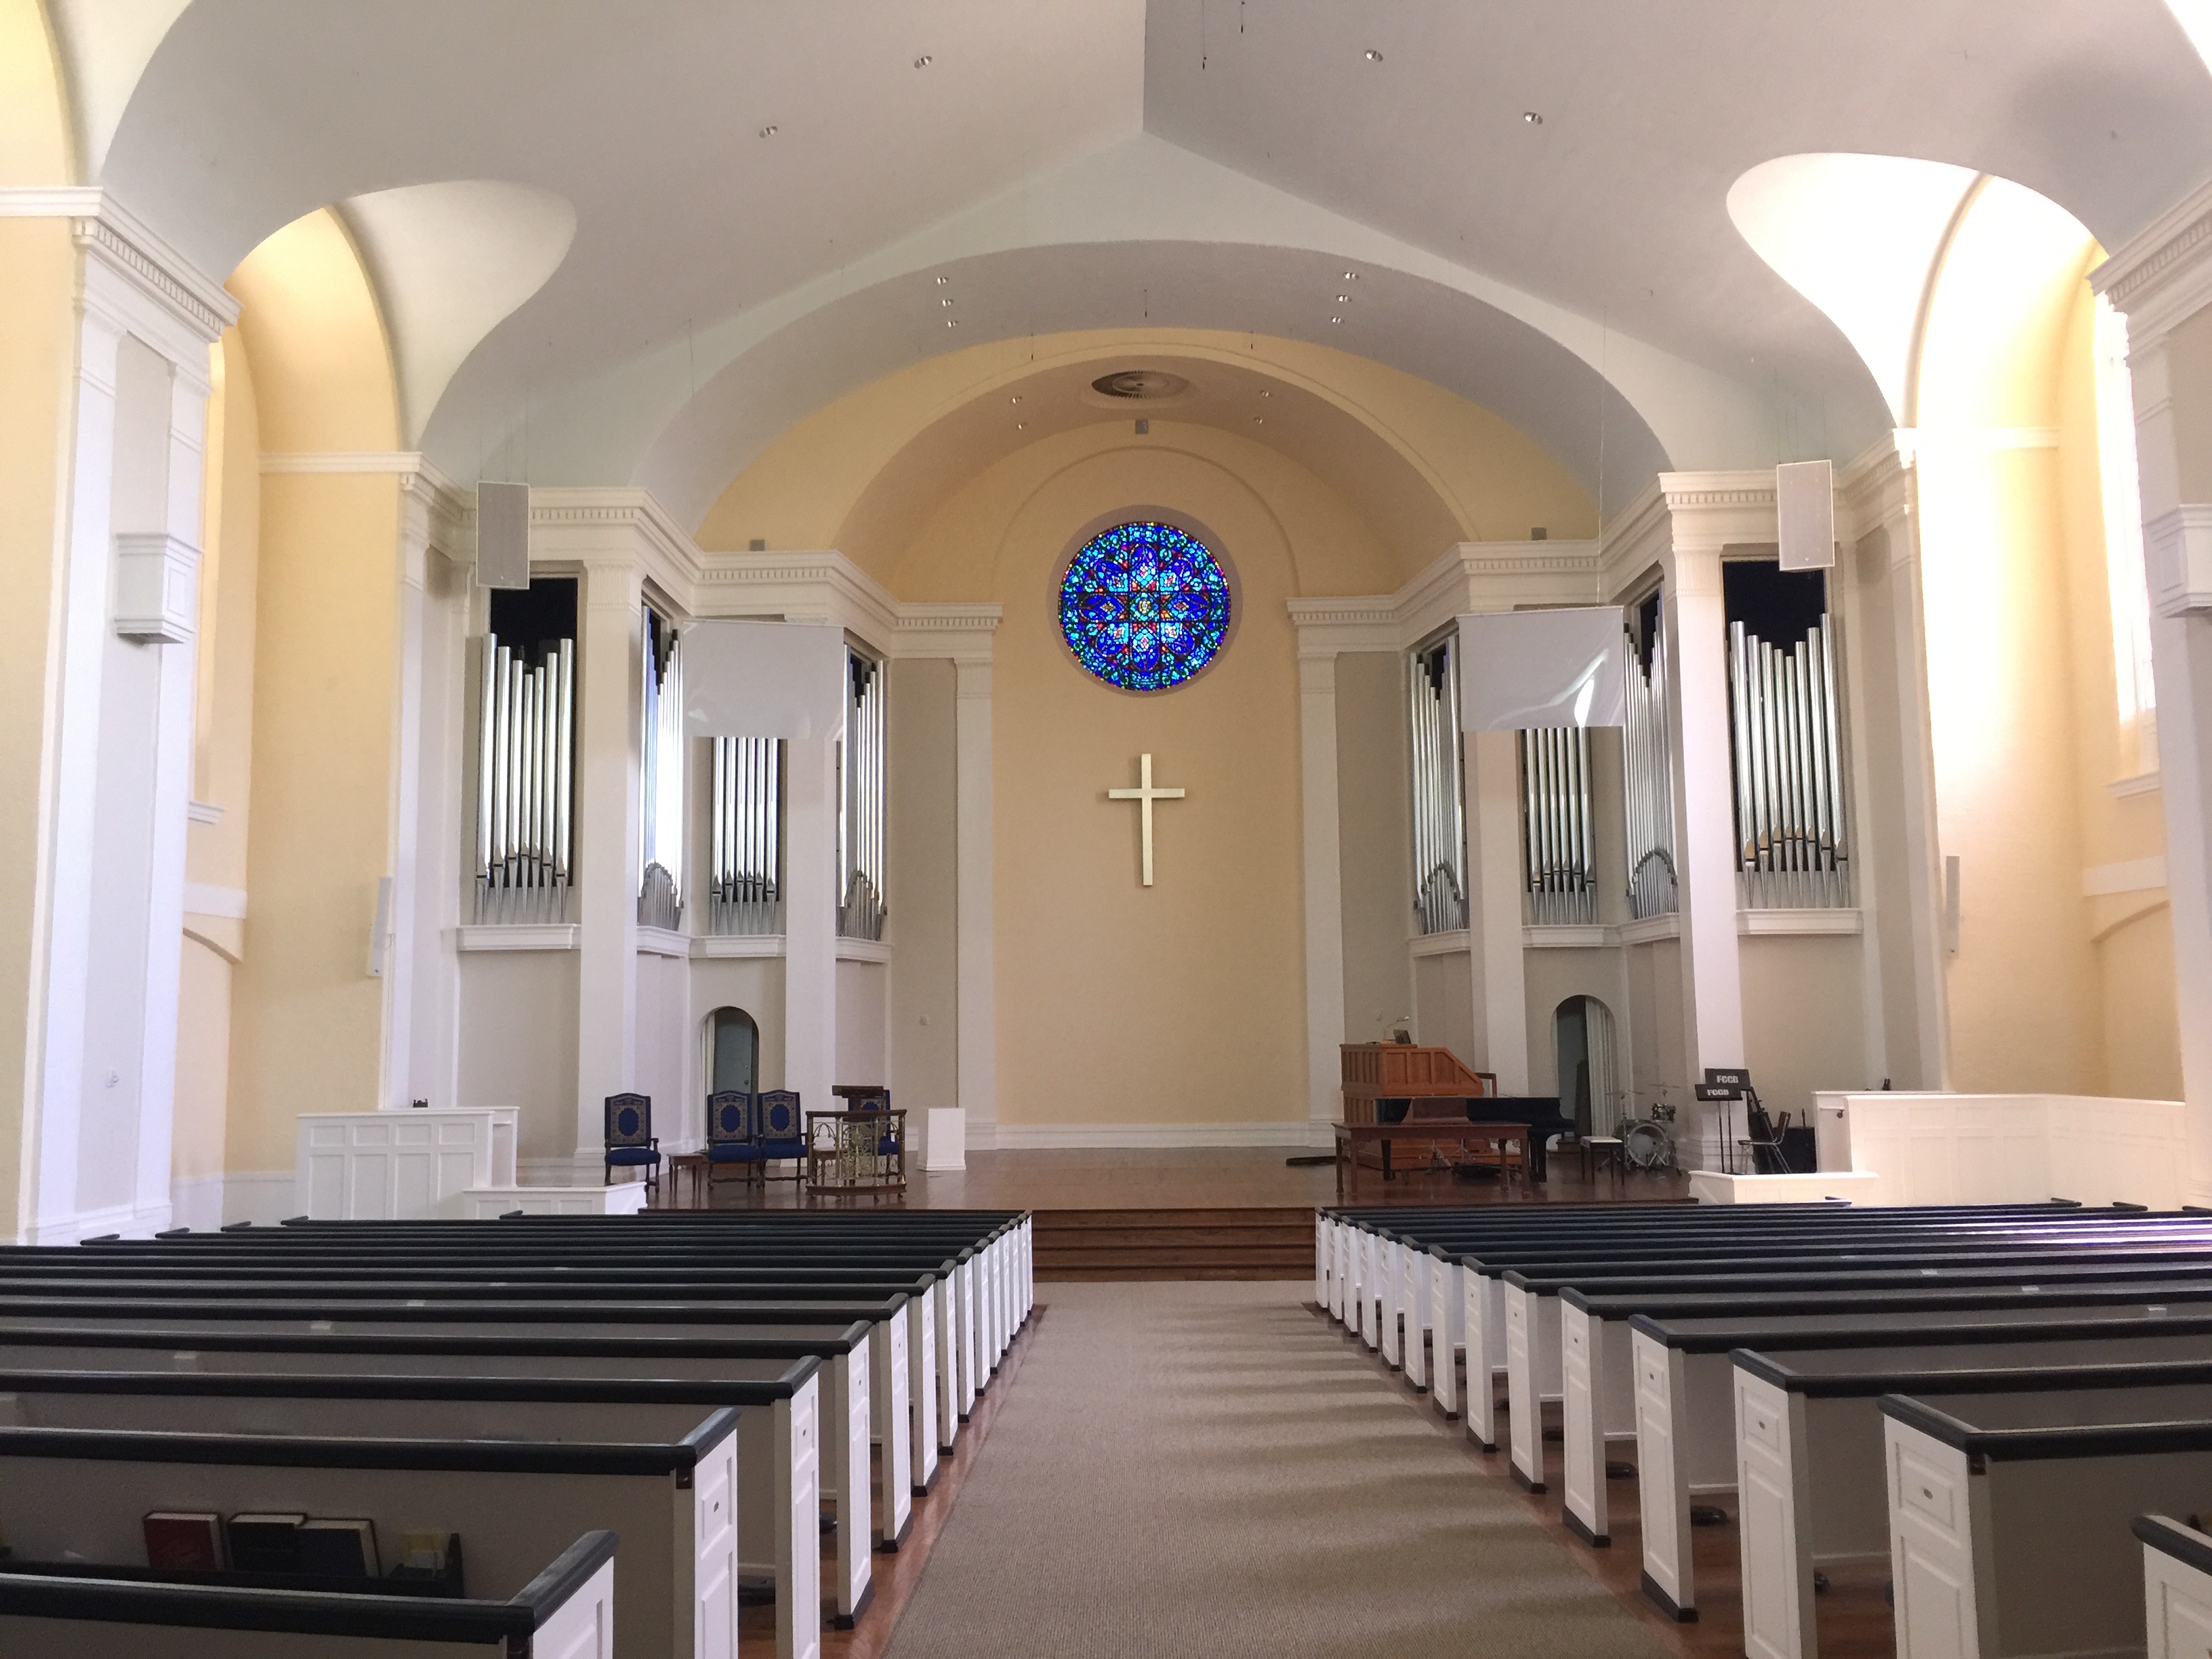 An inside view of a church